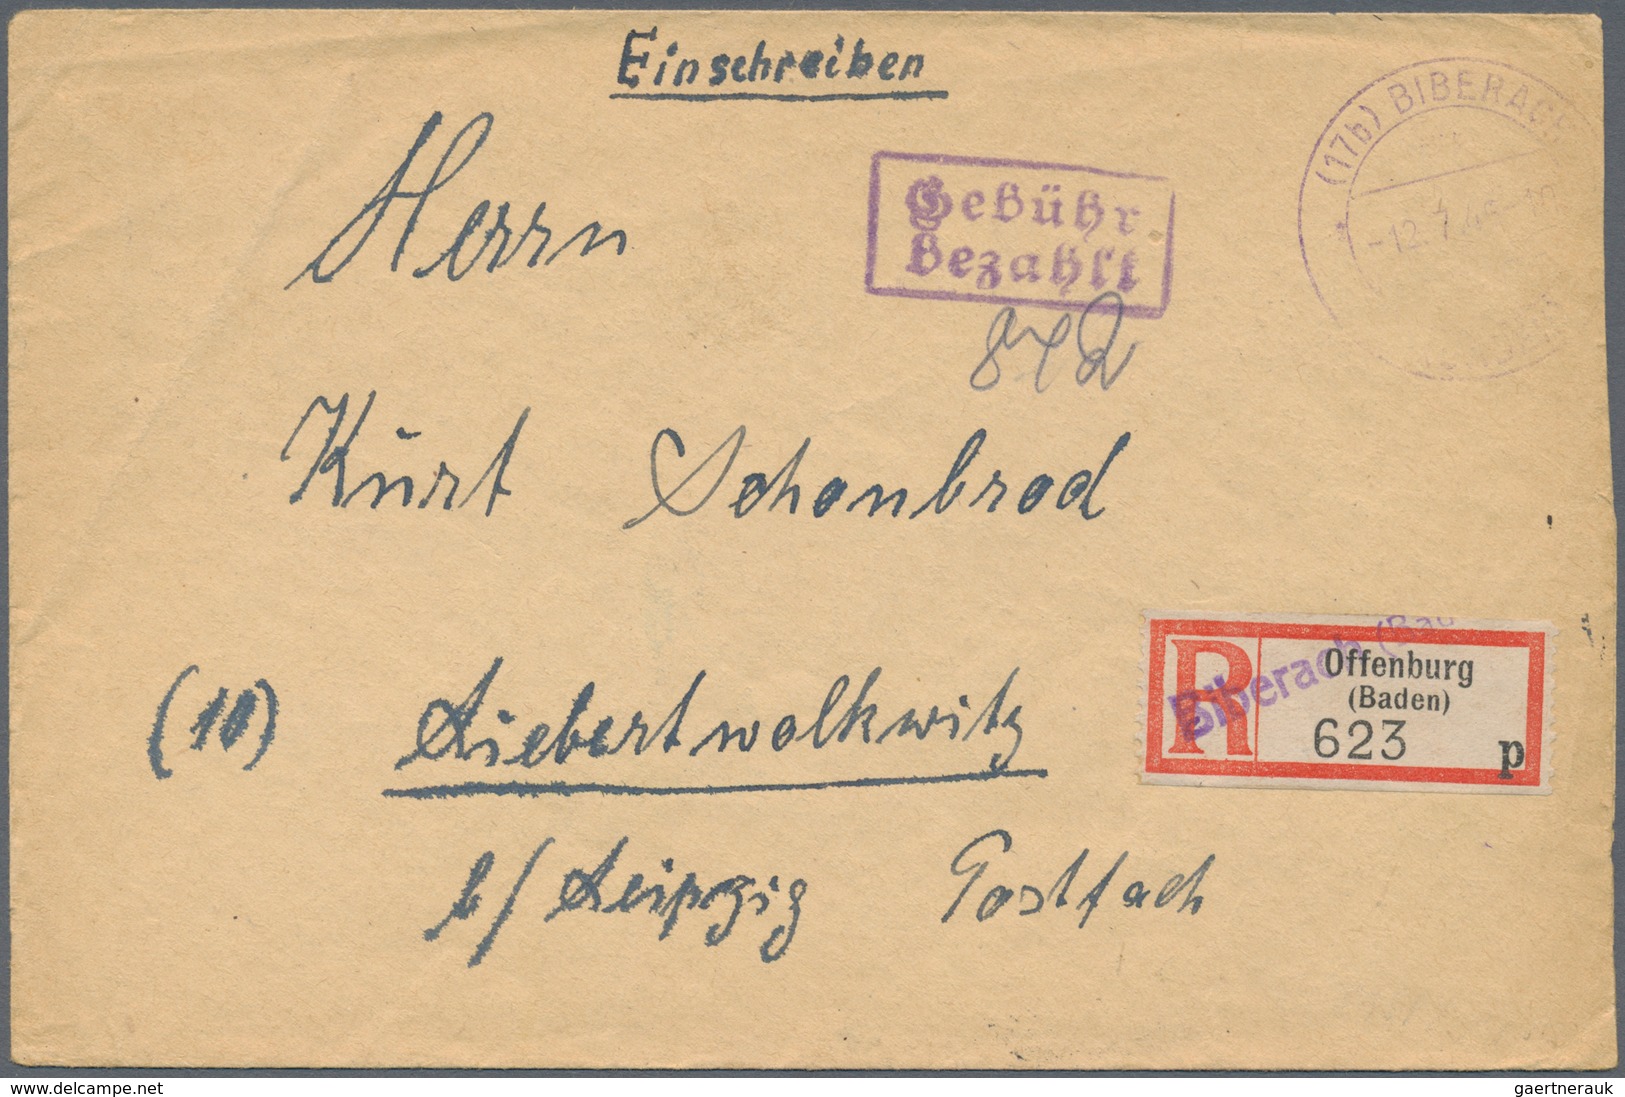 Alliierte Besetzung - Gebühr Bezahlt: 1945/1949, Baden Plz 17a/b, saubere Partie von ca. 160 Gebühr